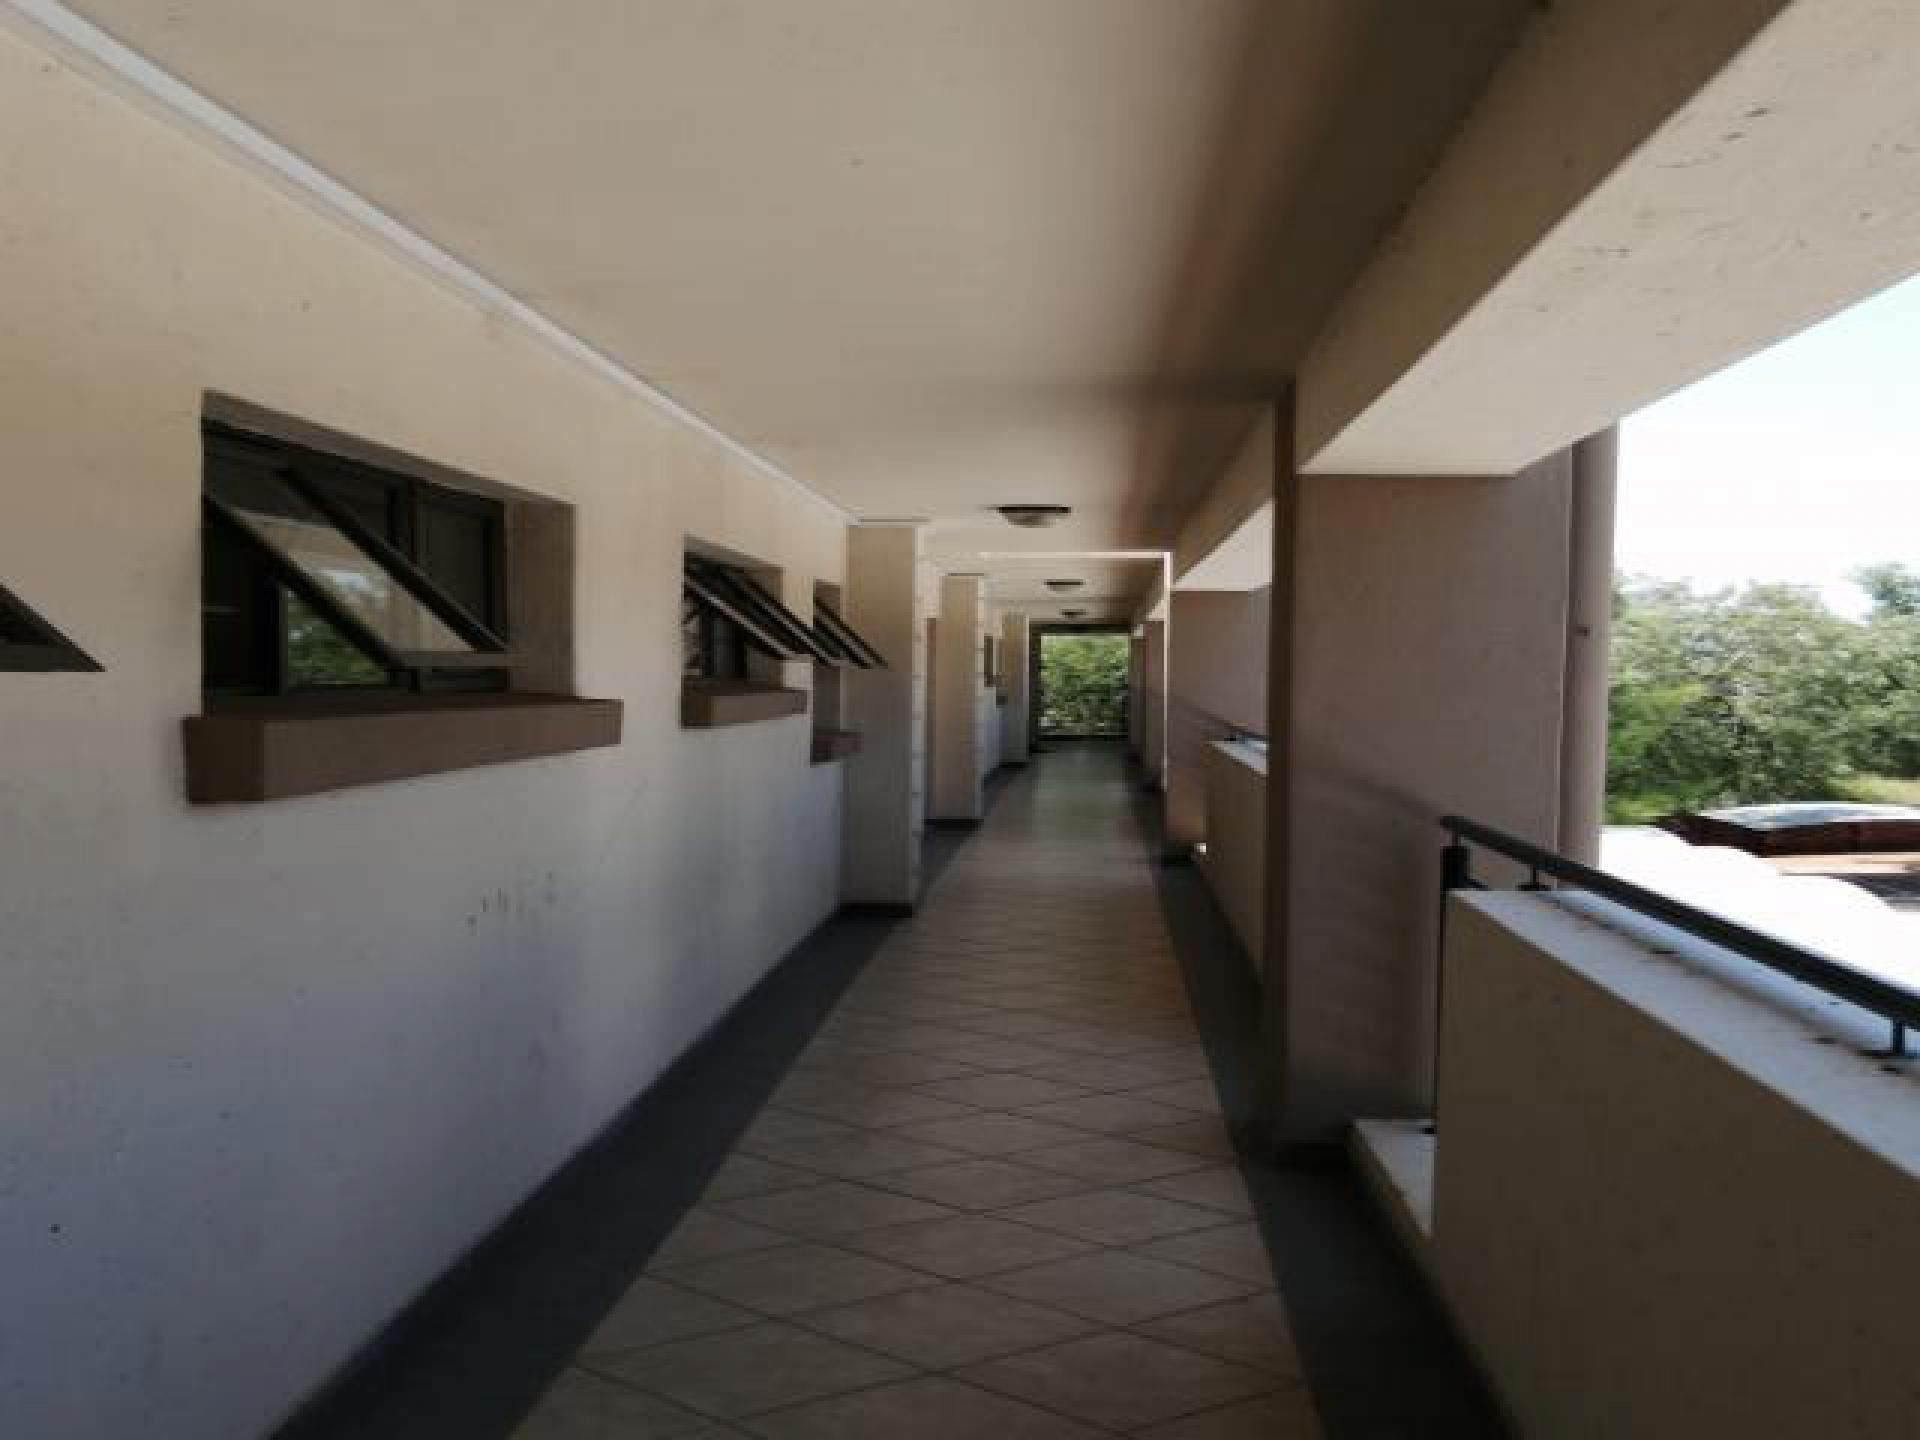 Spaces of property in Lephalale (Ellisras)